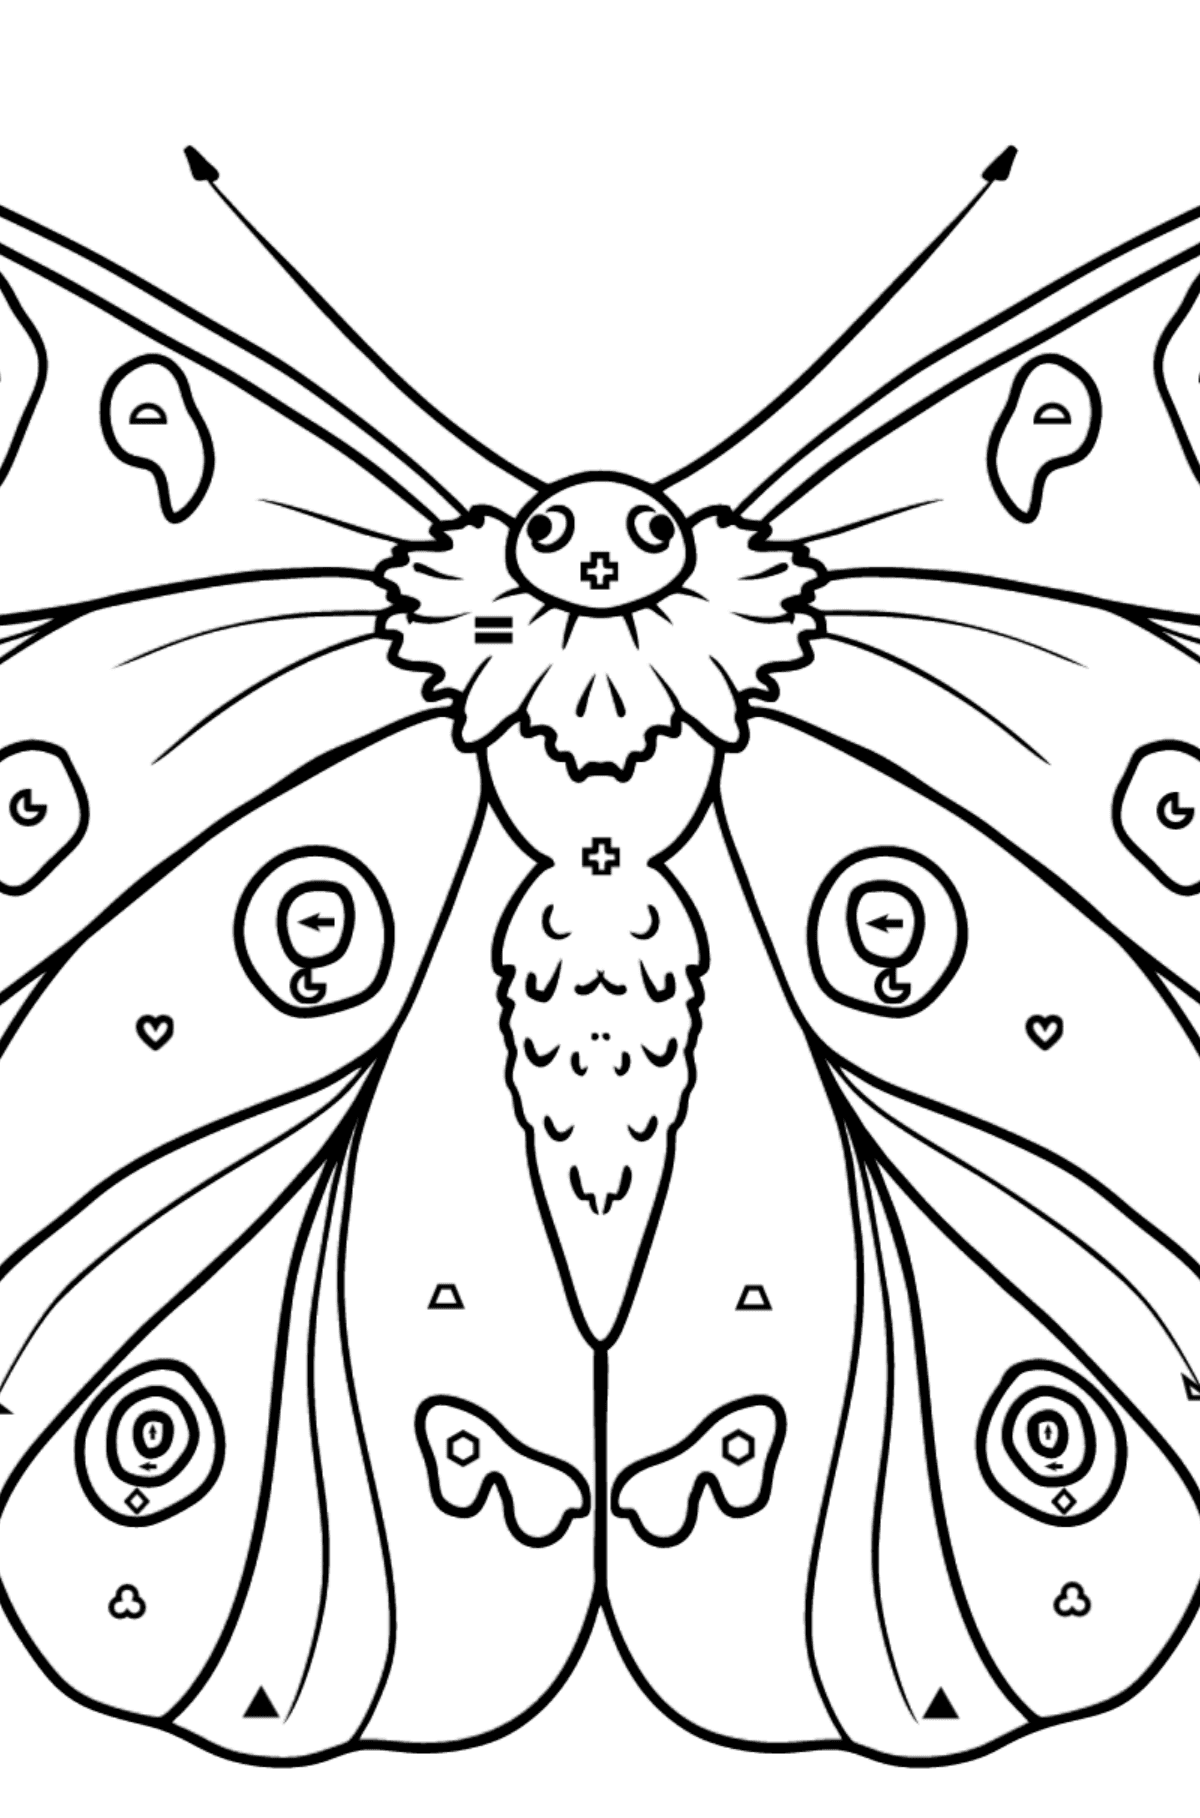 Kolorowanka Motyl Apollo - Kolorowanie według symboli i figur geometrycznych dla dzieci